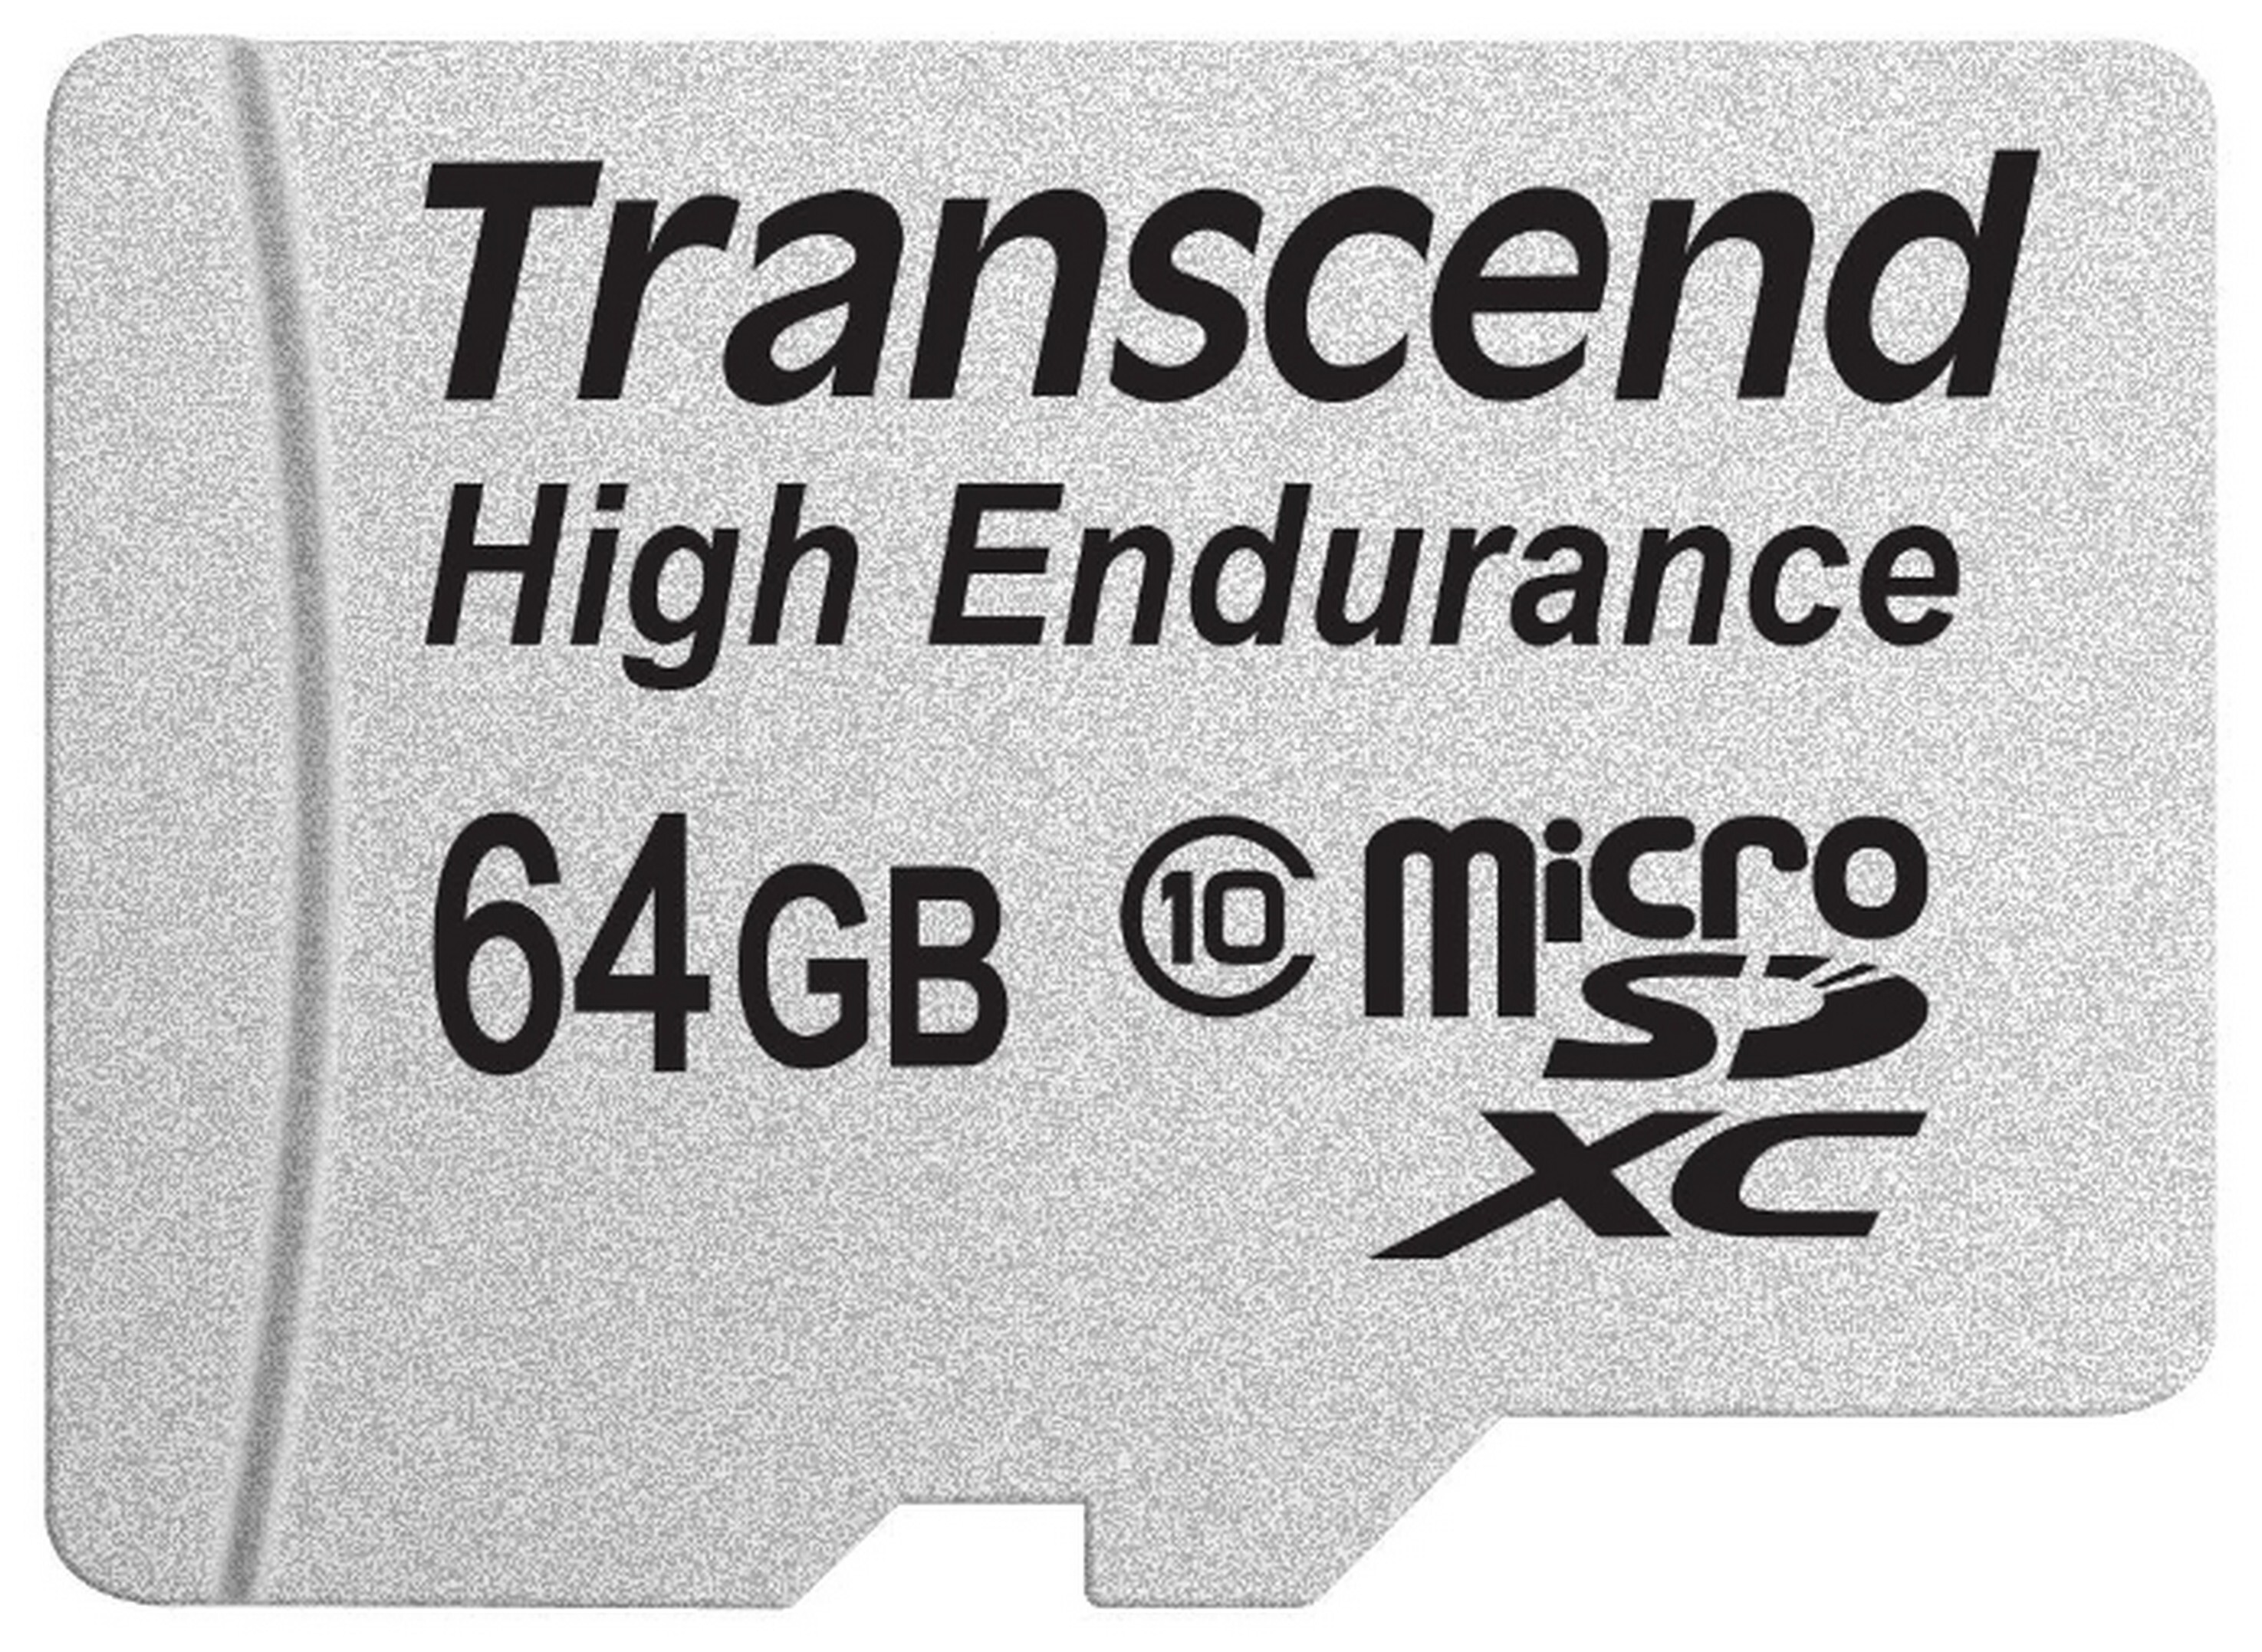 Купить карту памяти на 64 гб. MICROSD Transcend 64gb. Карта памяти MICROSD 64gb. Карта памяти MICROSDHC 16 ГБ class 10 Transcend. Карта памяти MICROSD 64.